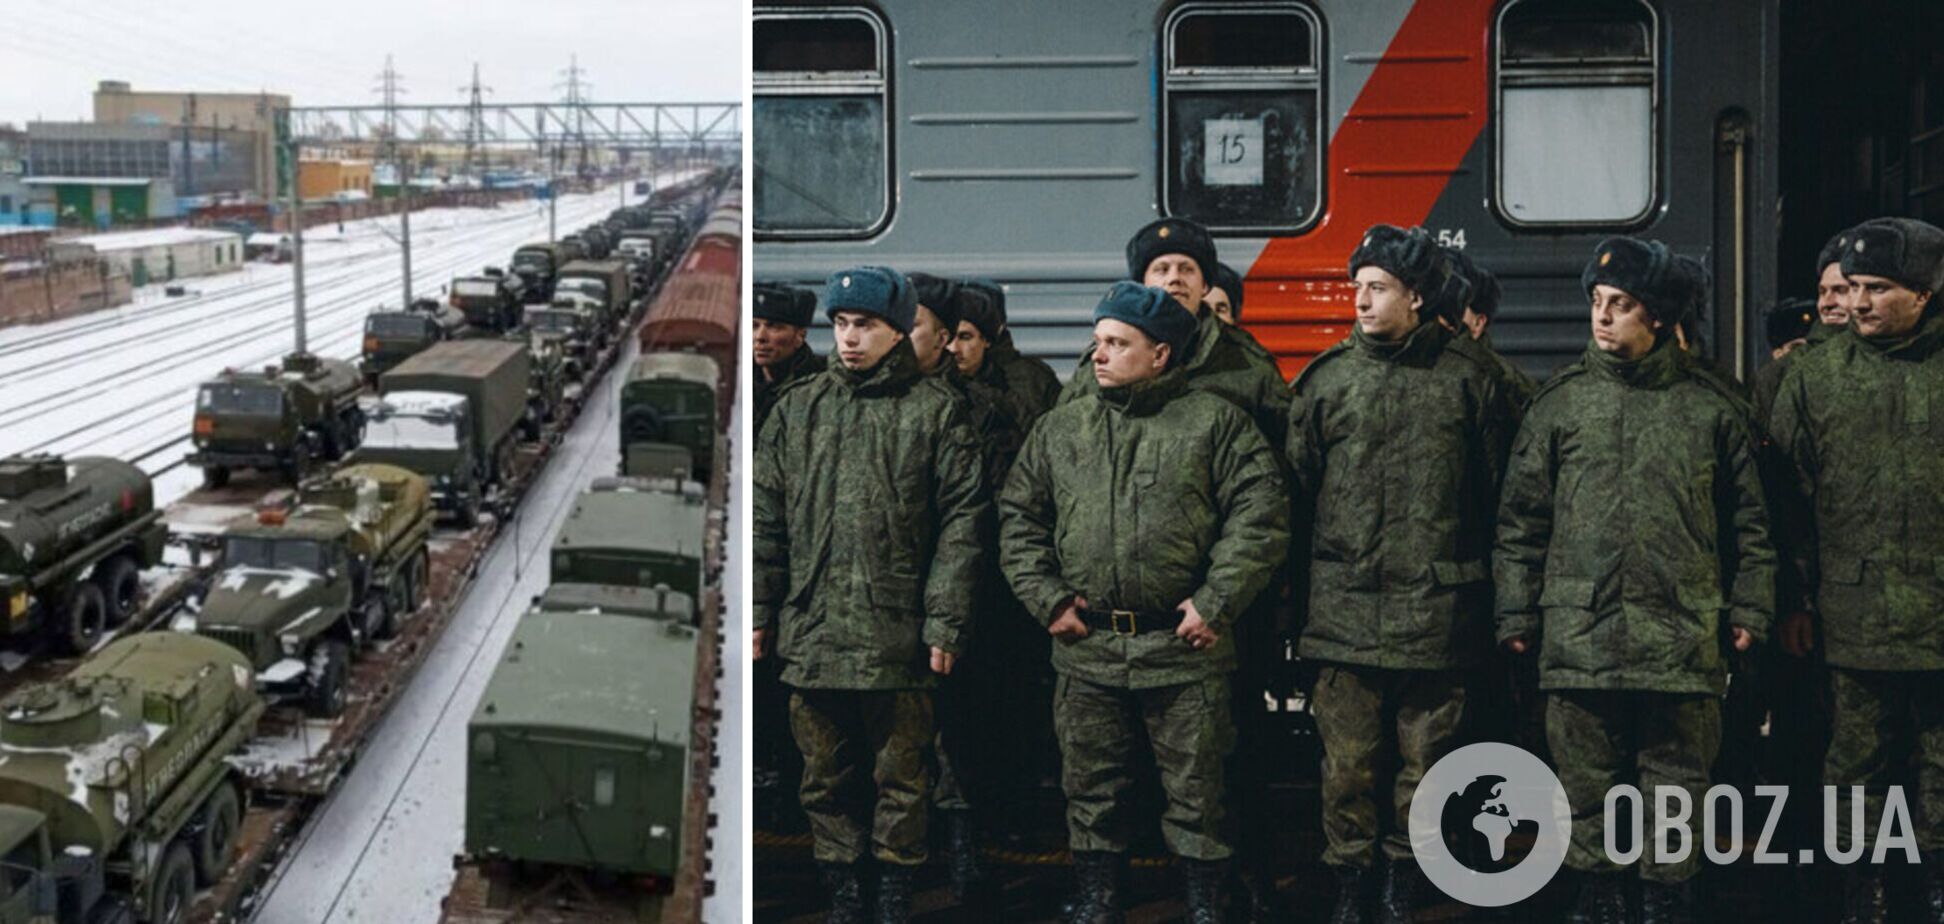 В Белоруссию перебросили 15 вагонов с личным составом армии РФ: в них может быть около 800 российских военных